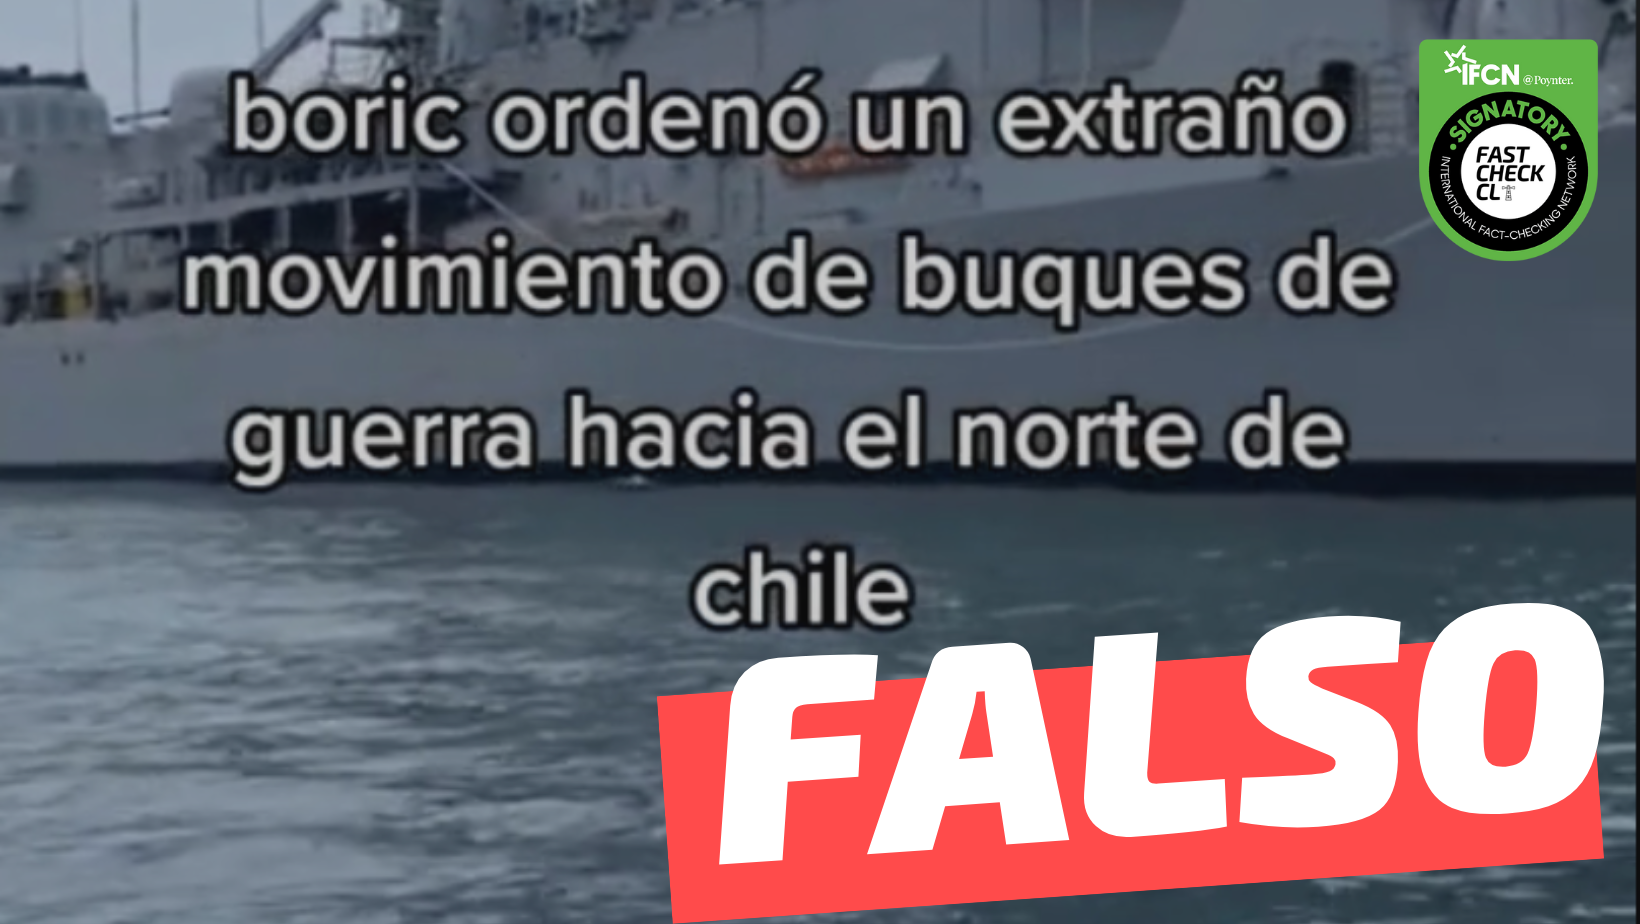 You are currently viewing (Videos) “Boric ordenó un movimiento de buques hacia el norte de Chile, descargaron cientos de blindados de guerra en el puerto de Arica”: #Falso